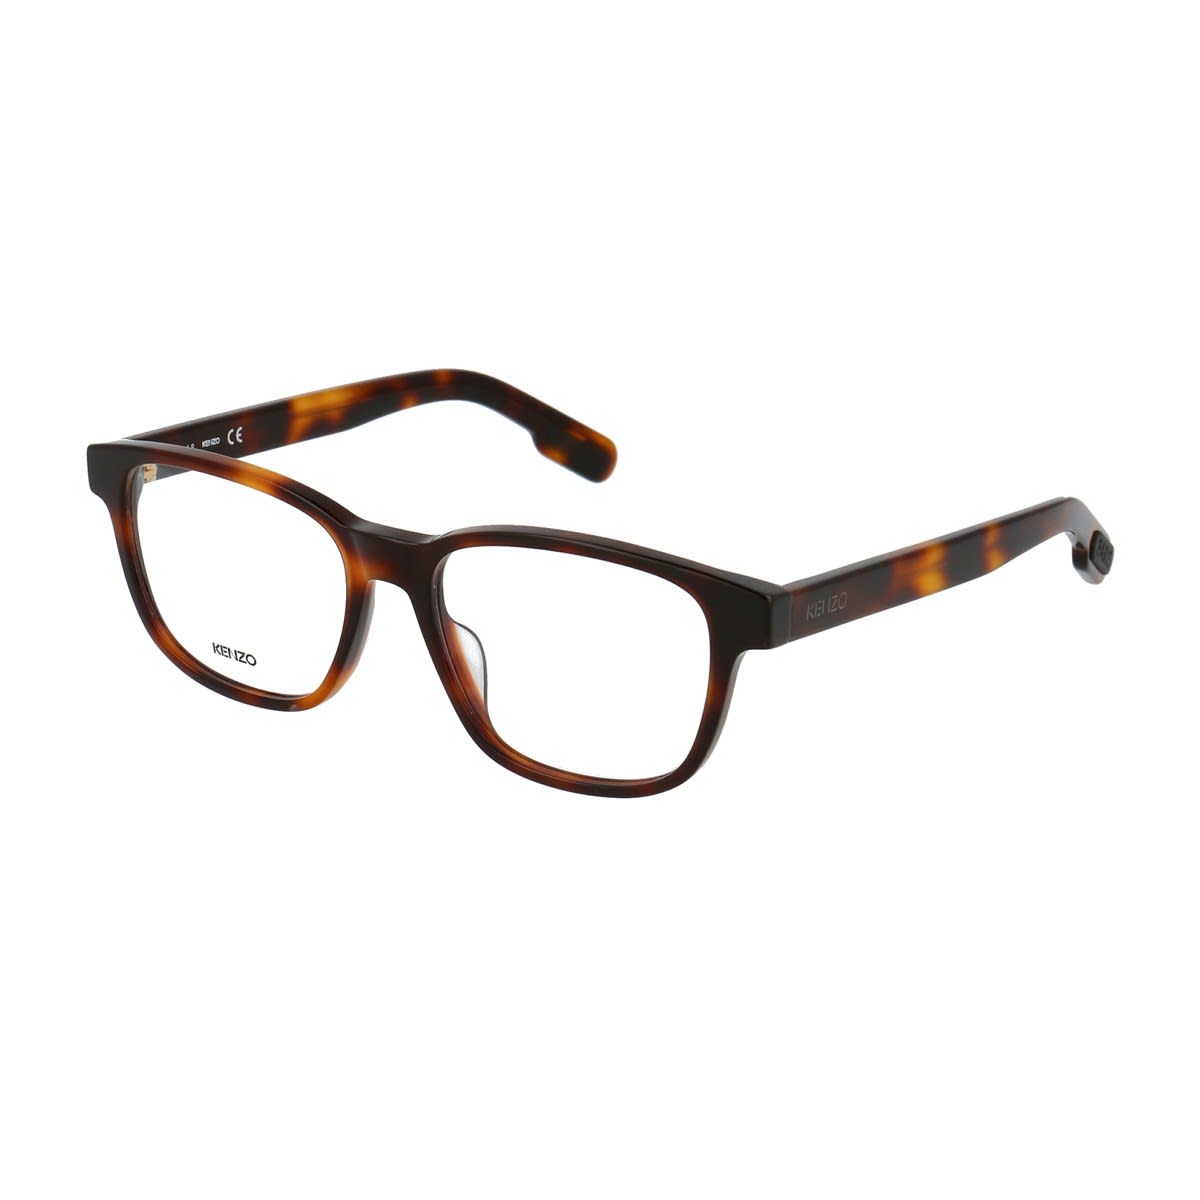 Kenzo Kz50026i Glasses In Marrone